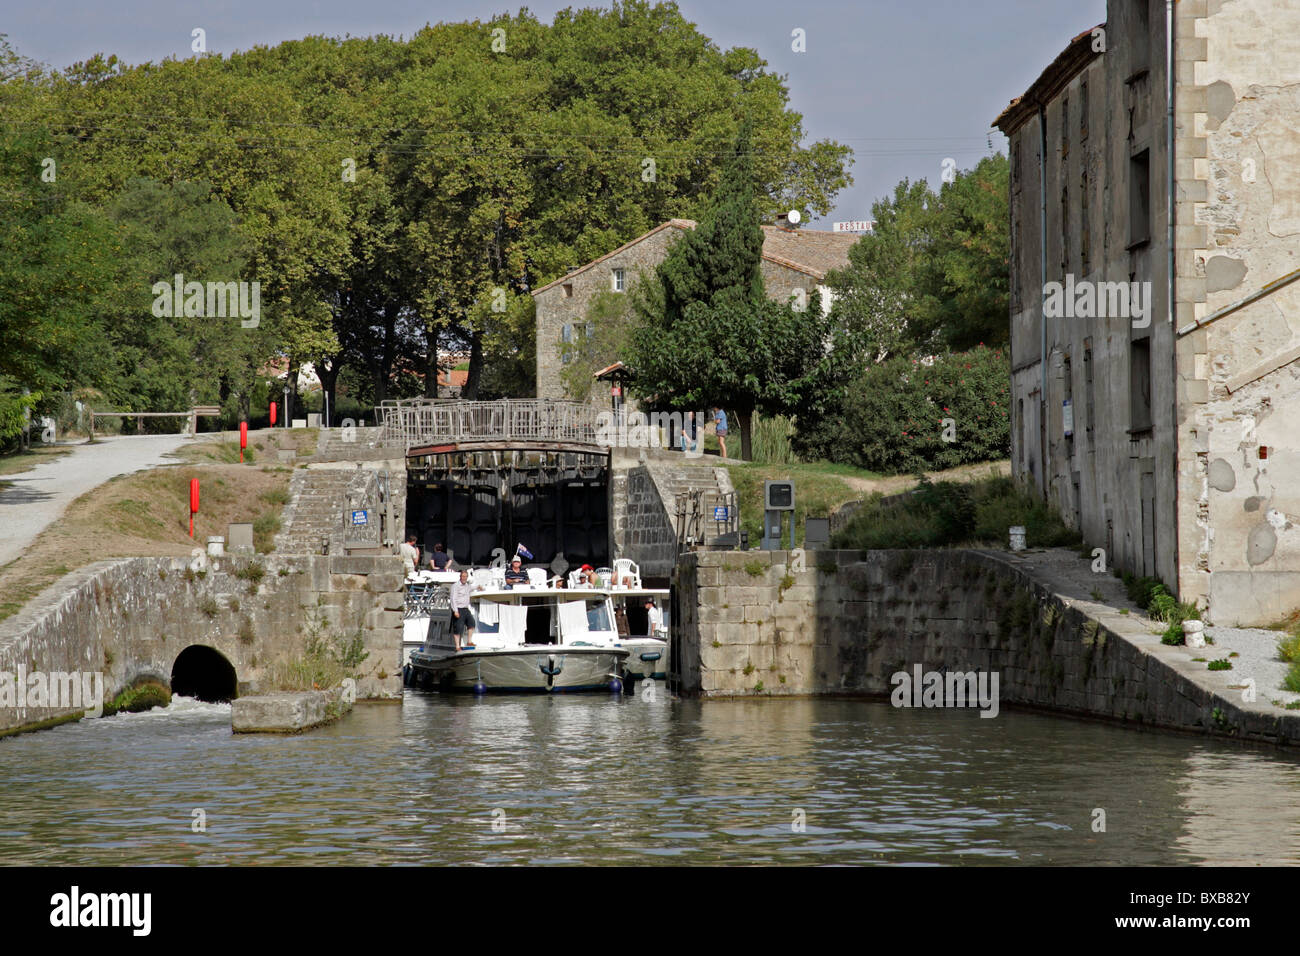 Canal, bateaux, écluse, Canal du Midi, Trèbes, Carcassonne, Aude, France, Europe Banque D'Images